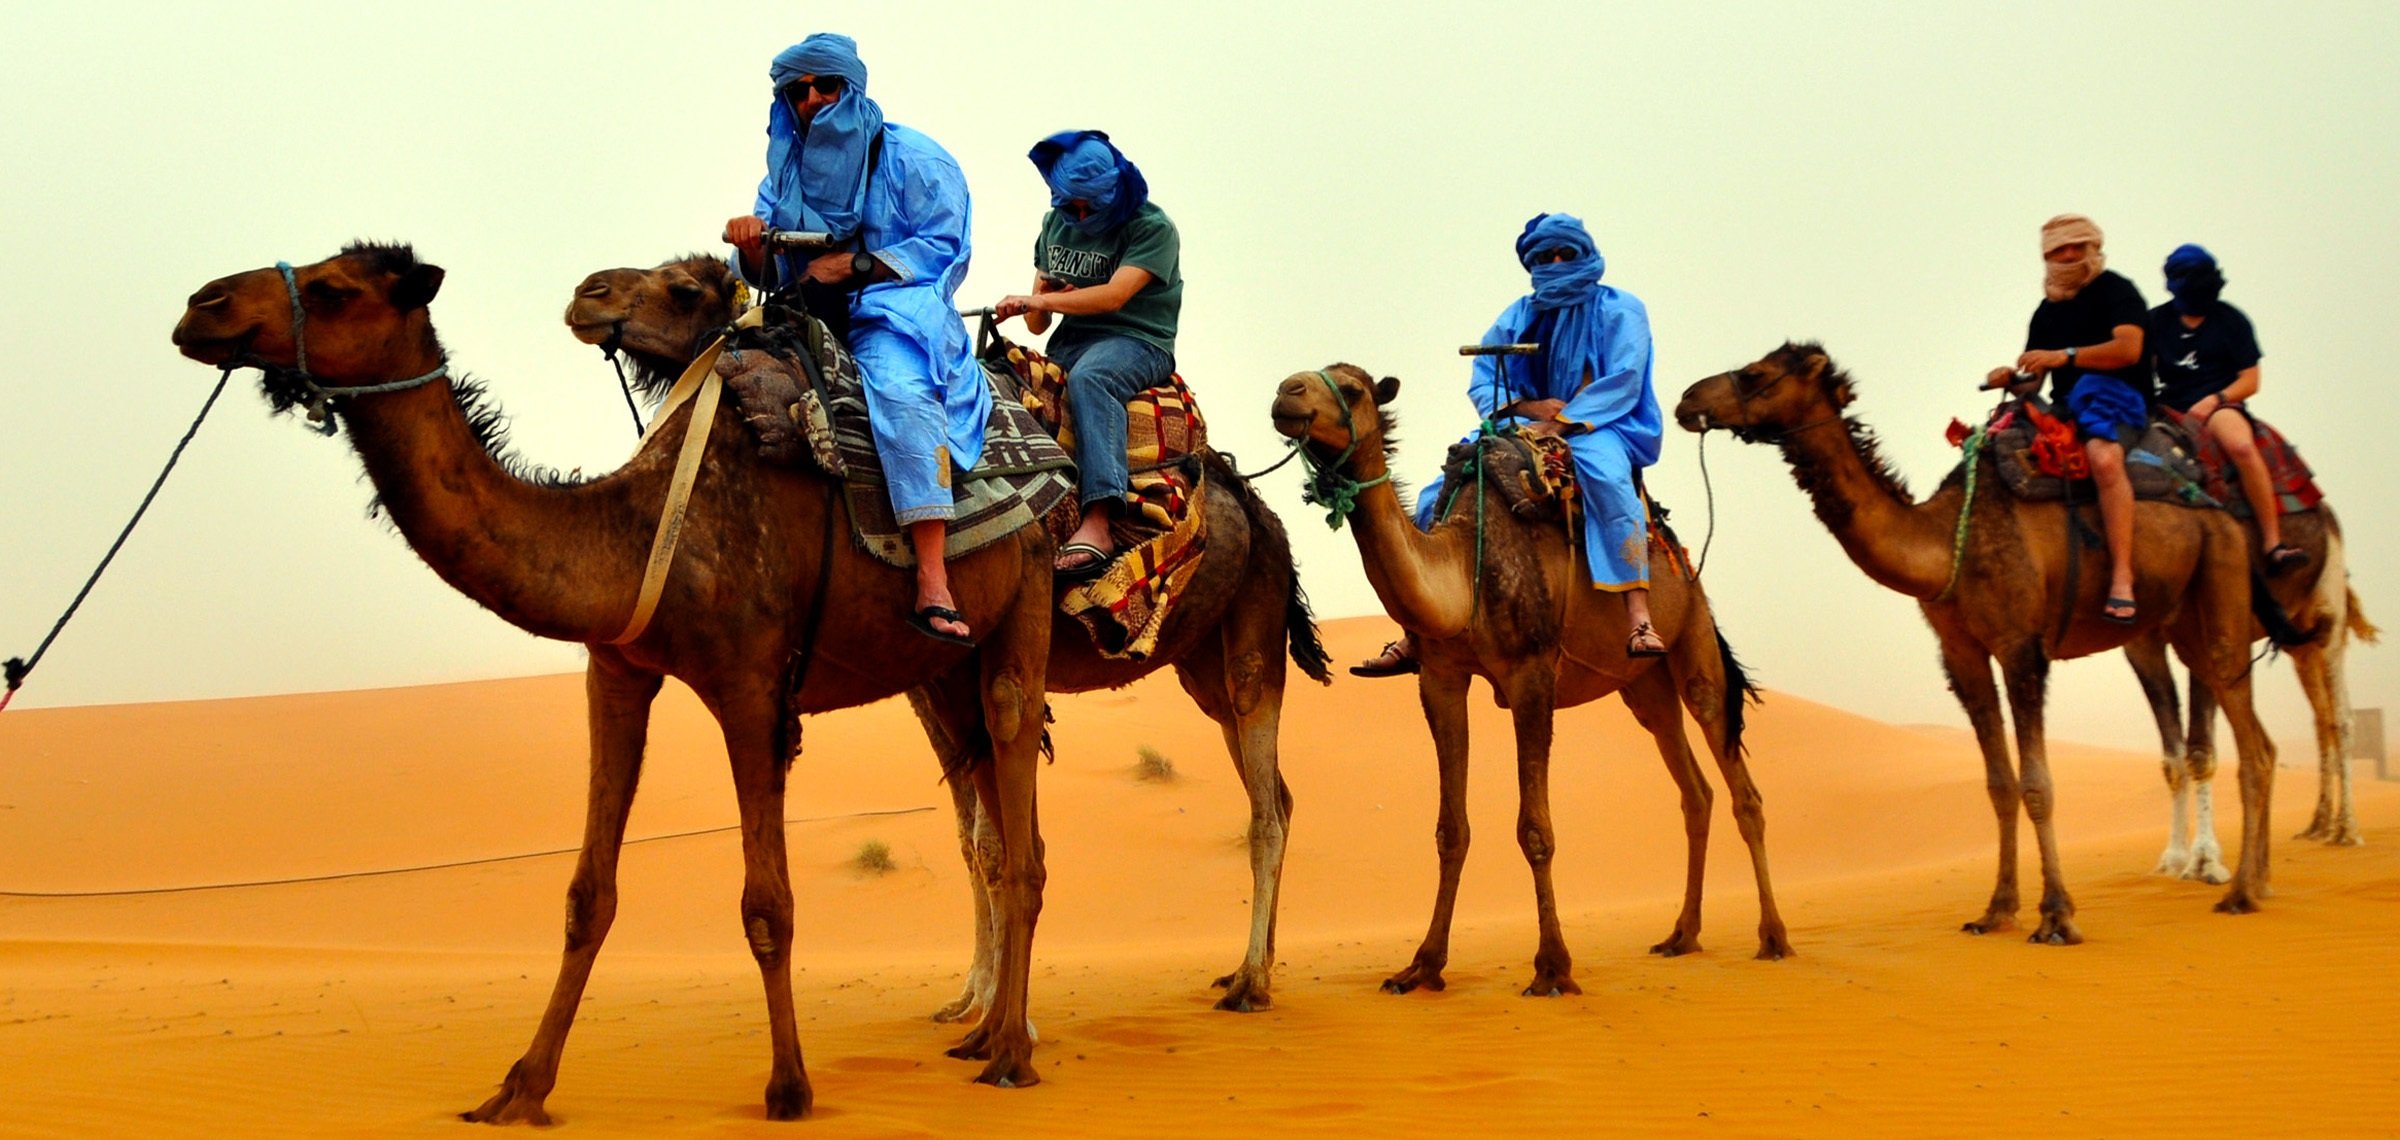 Едет караван. Родина одногорбого верблюда. Бедуины в Египте. Туркменский Арвана - одногорбый верблюд. Одногорбый верблюд с наездником.